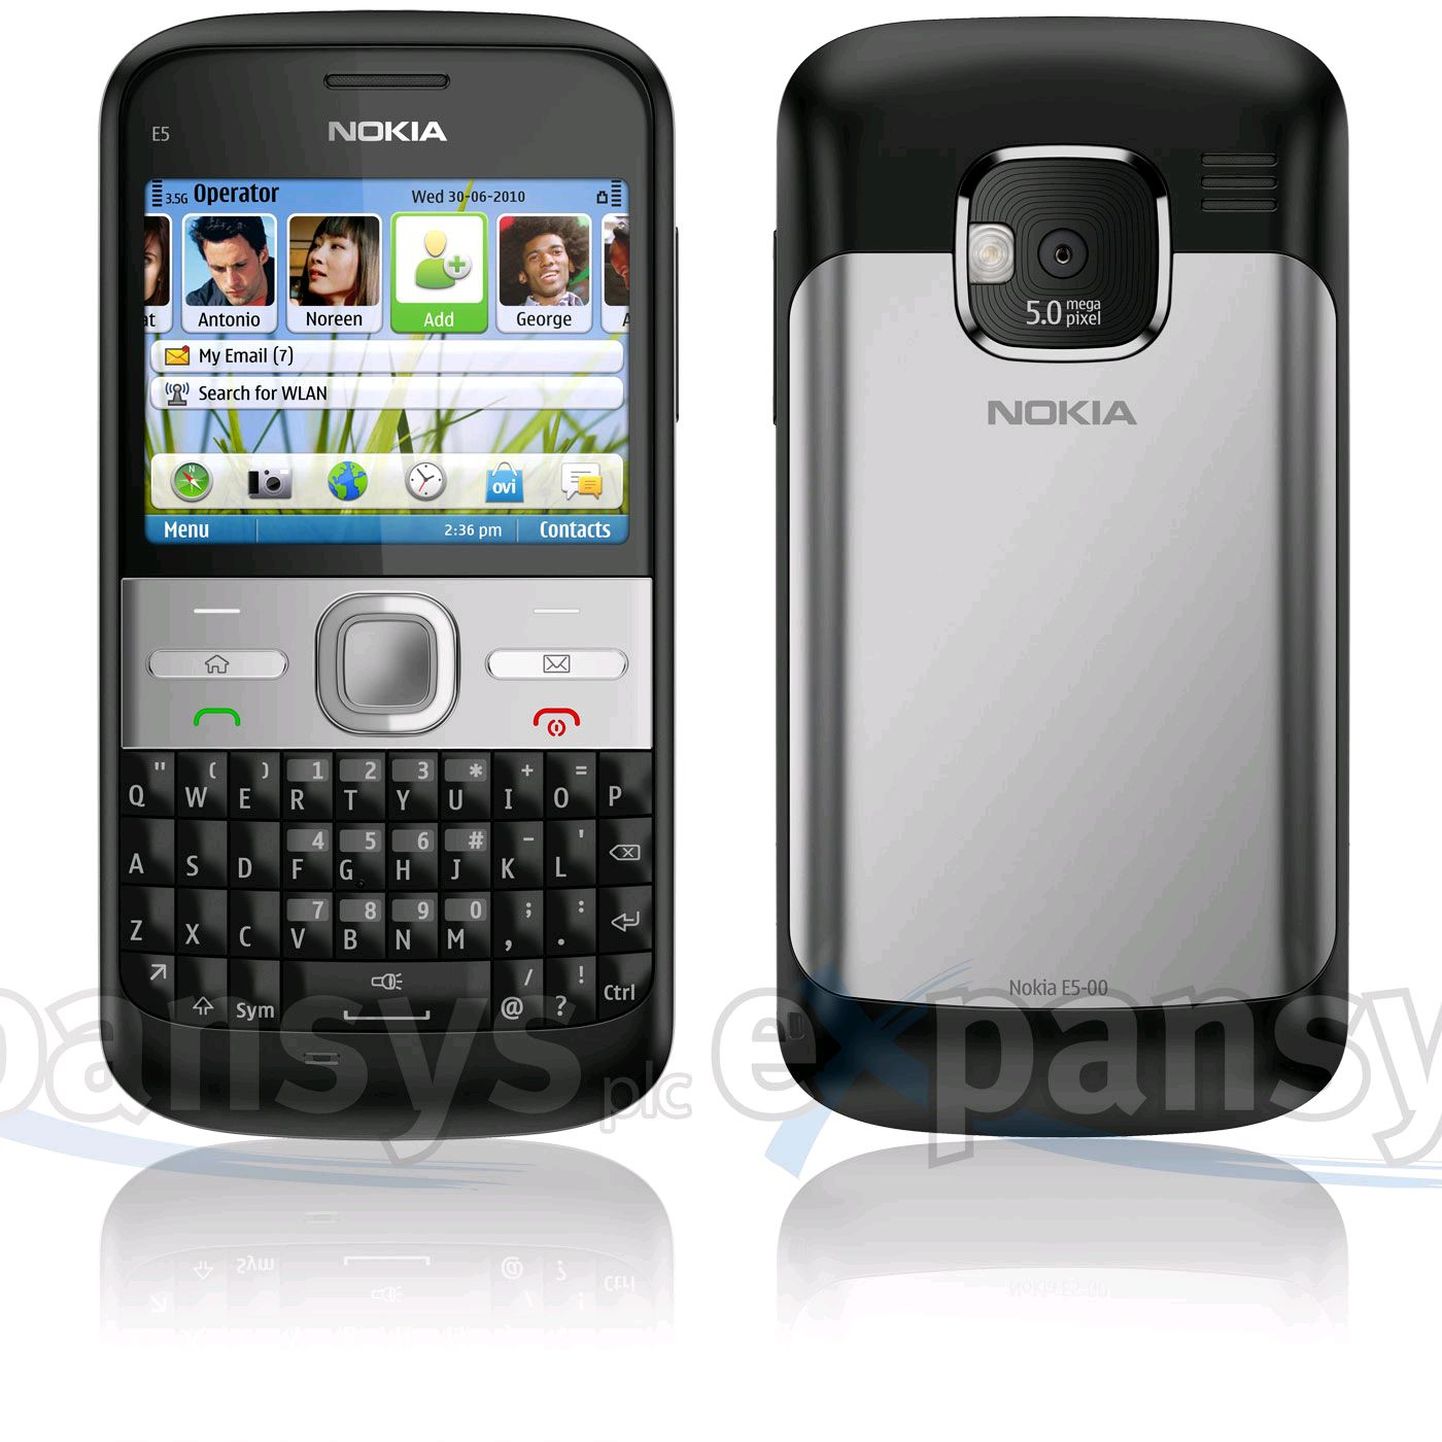 Nokia E5, Symbian operatsioonisüsteem